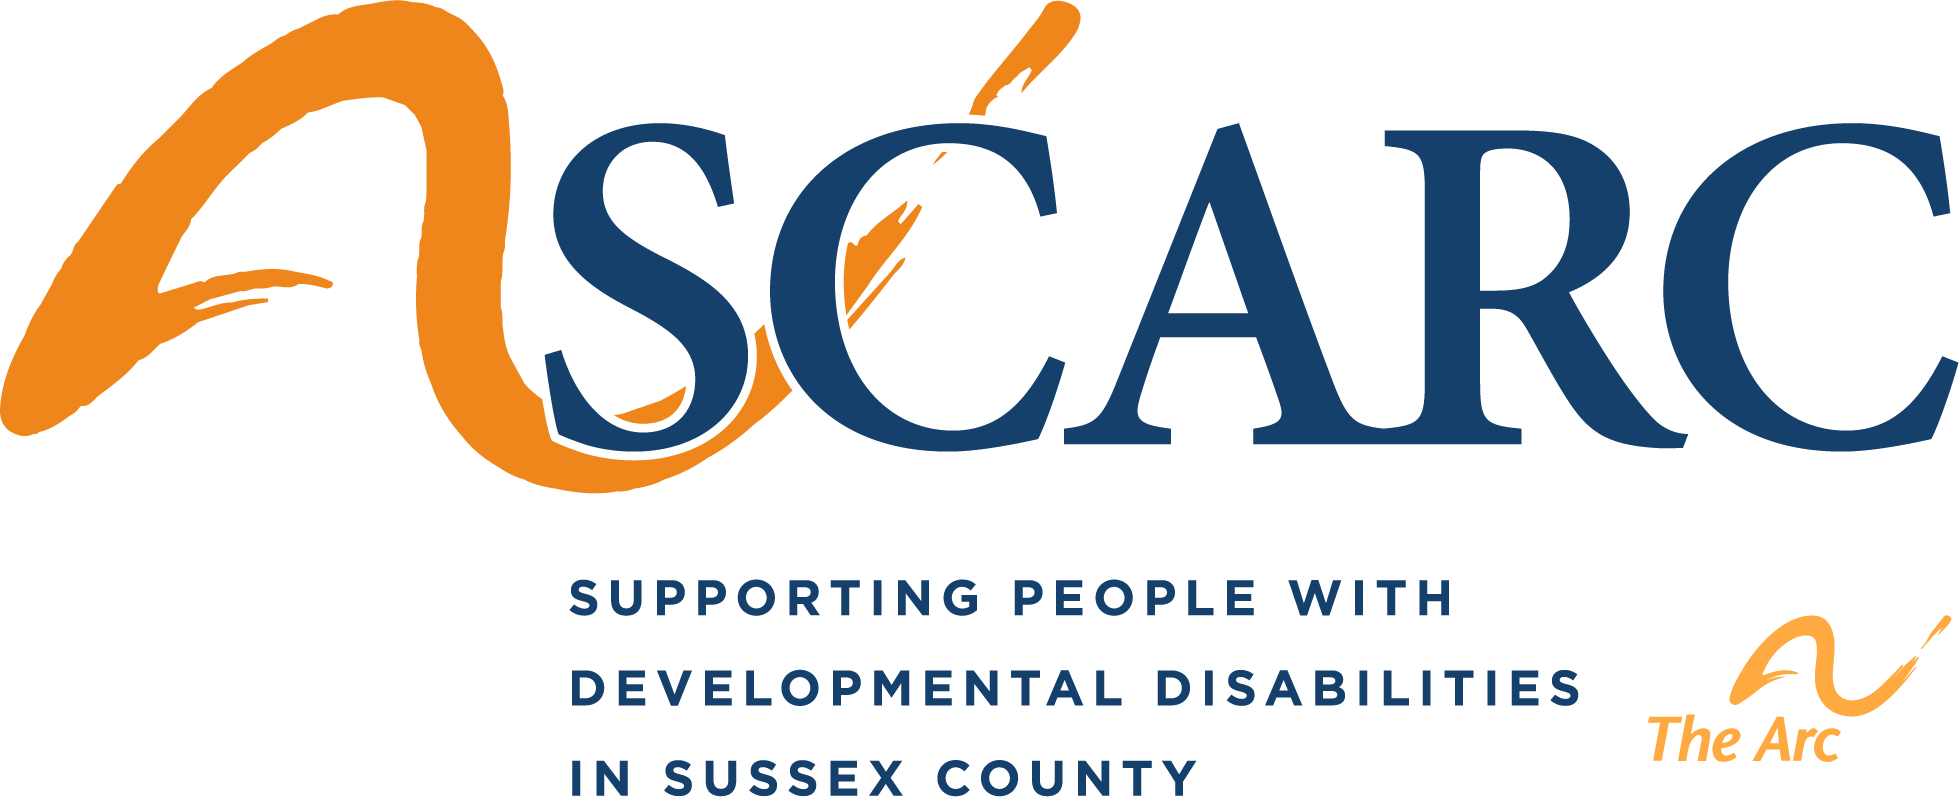 SCARC – Logo with Tagline